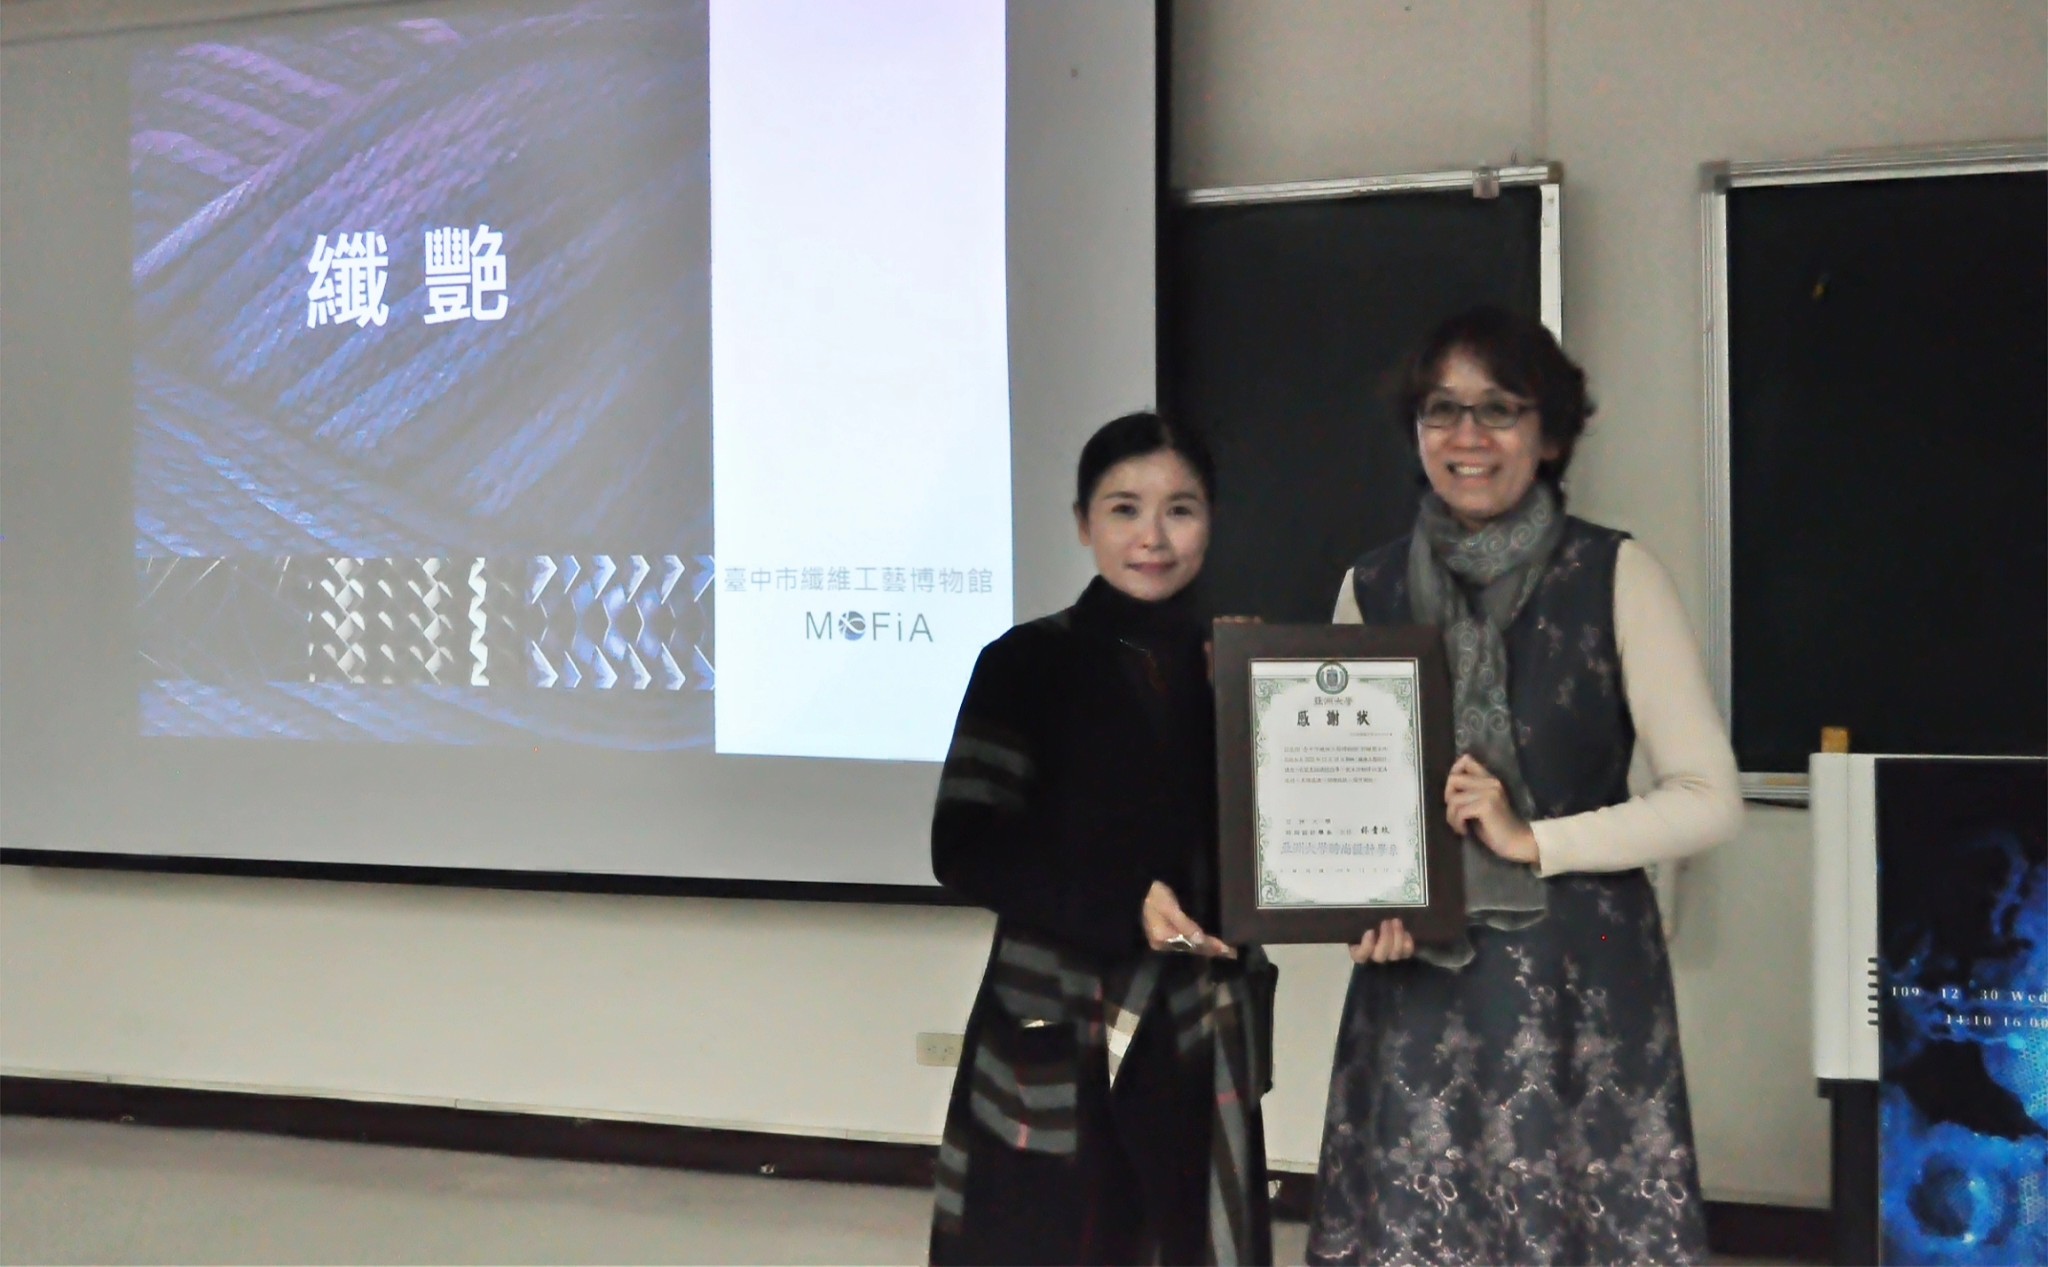 亞大創意設計學院副院長、時尚系主任林青玫(左)，致贈感謝狀給郭敏慧主任。